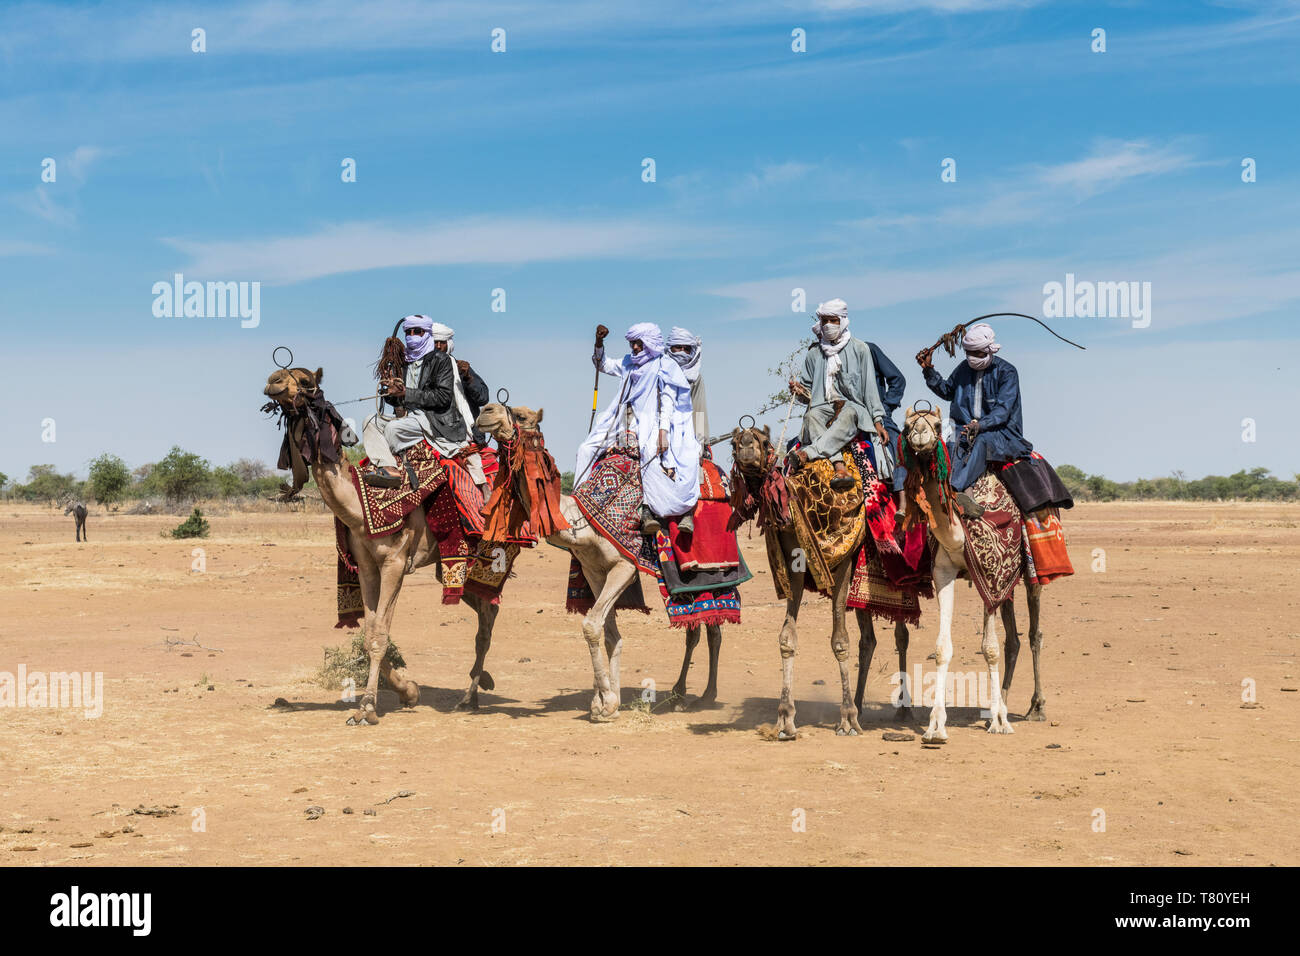 Los jinetes de camellos en un colorido festival tribal, Sahel, Chad, África Foto de stock